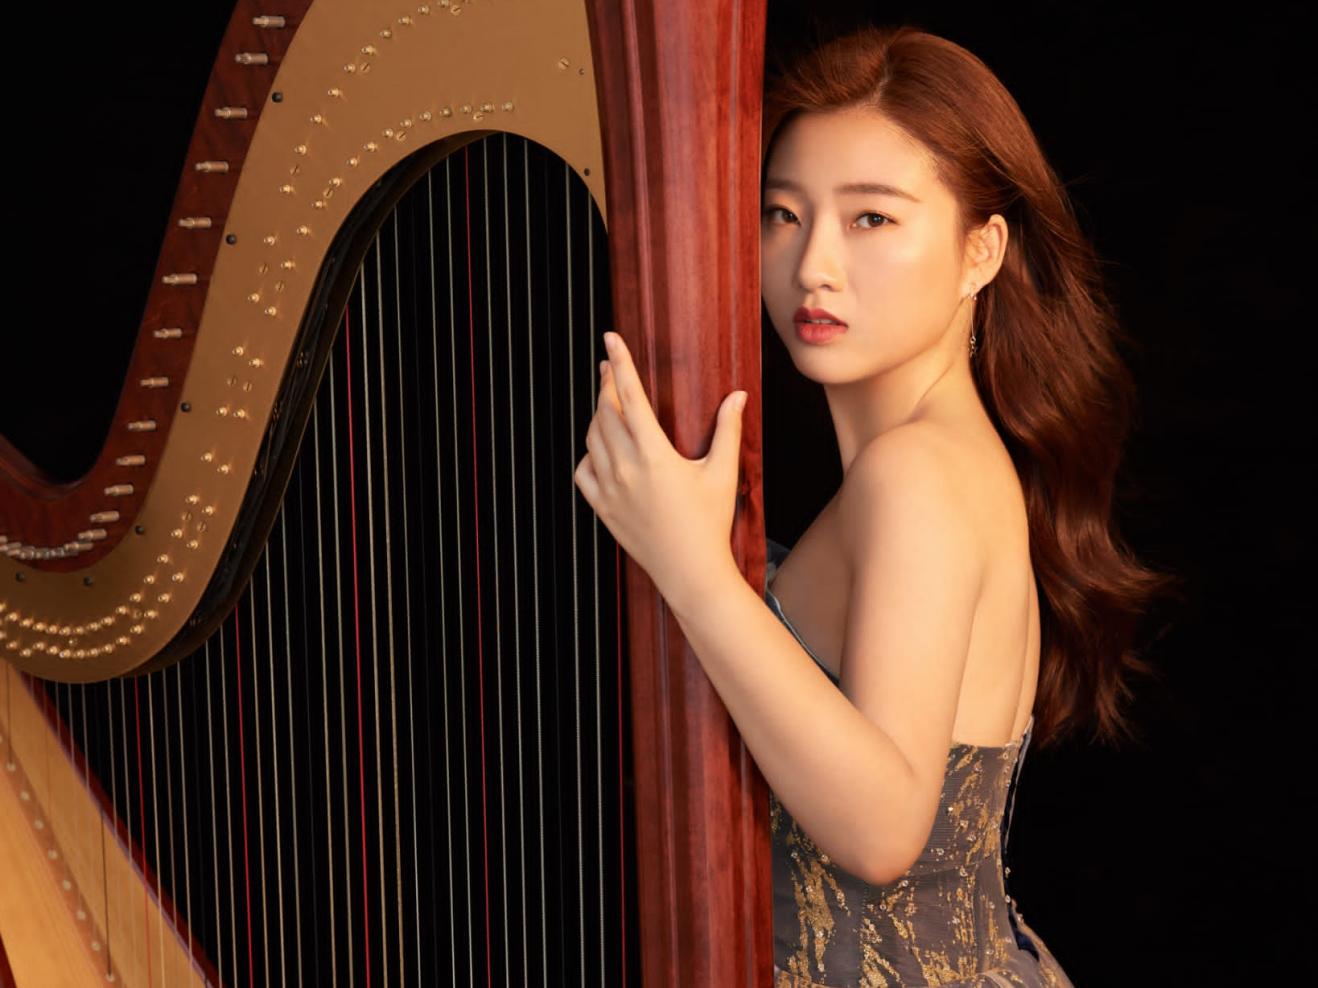 Harfe-Studentin Nan Wang, in einem edlen Kleid, hat die Hand und das Gesicht an der Harfe und blickt ernst in die Kamera.